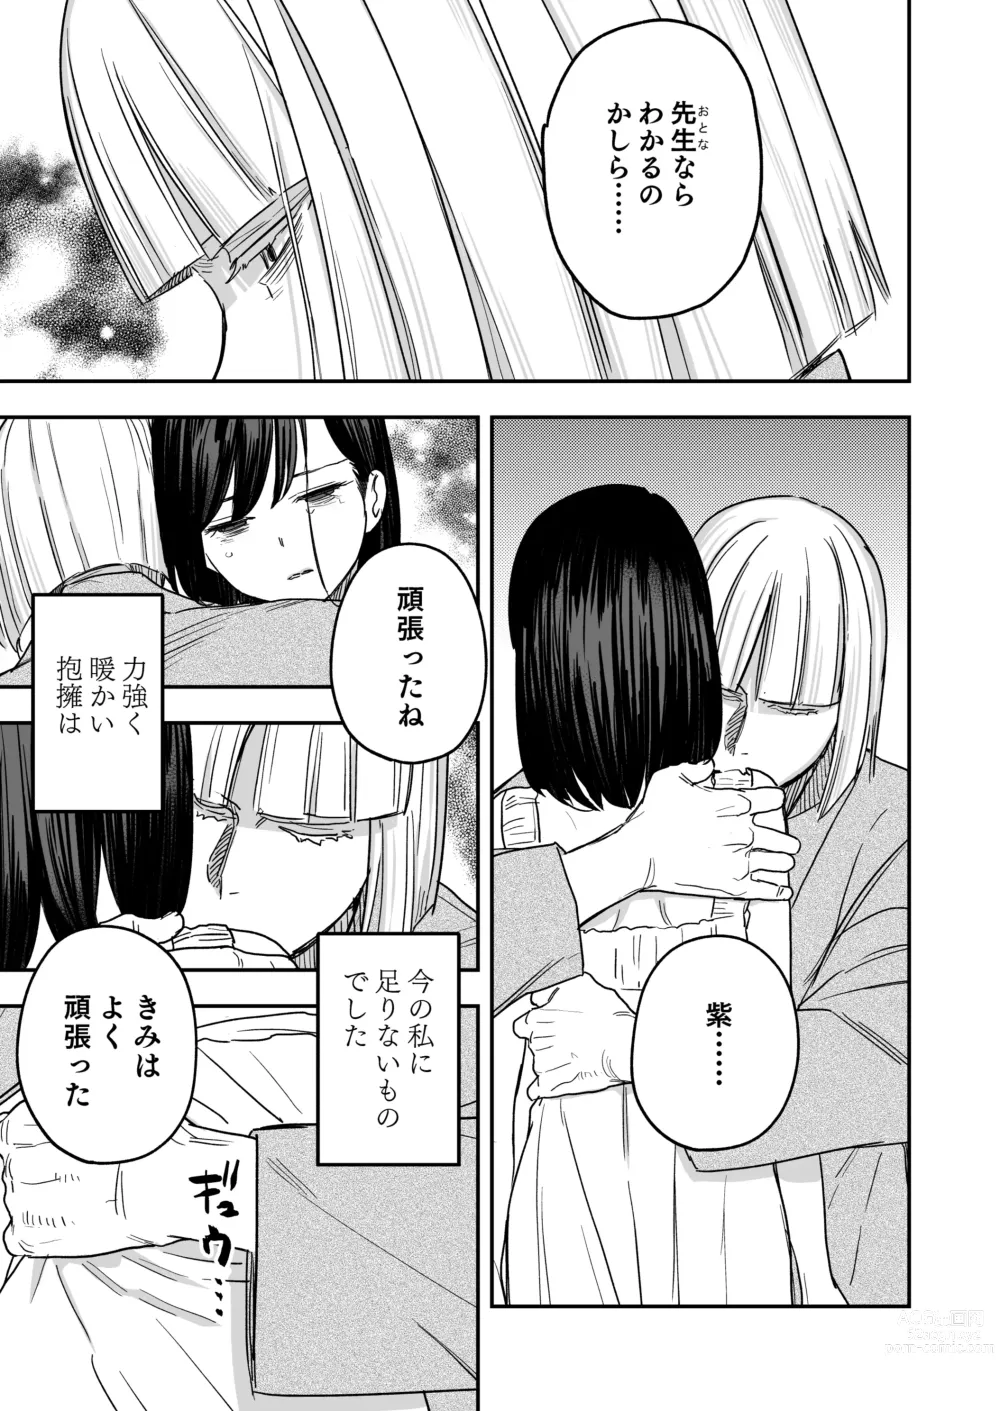 Page 24 of doujinshi Hachiroku Sou - Ieori to Hana Katajikena no Yome